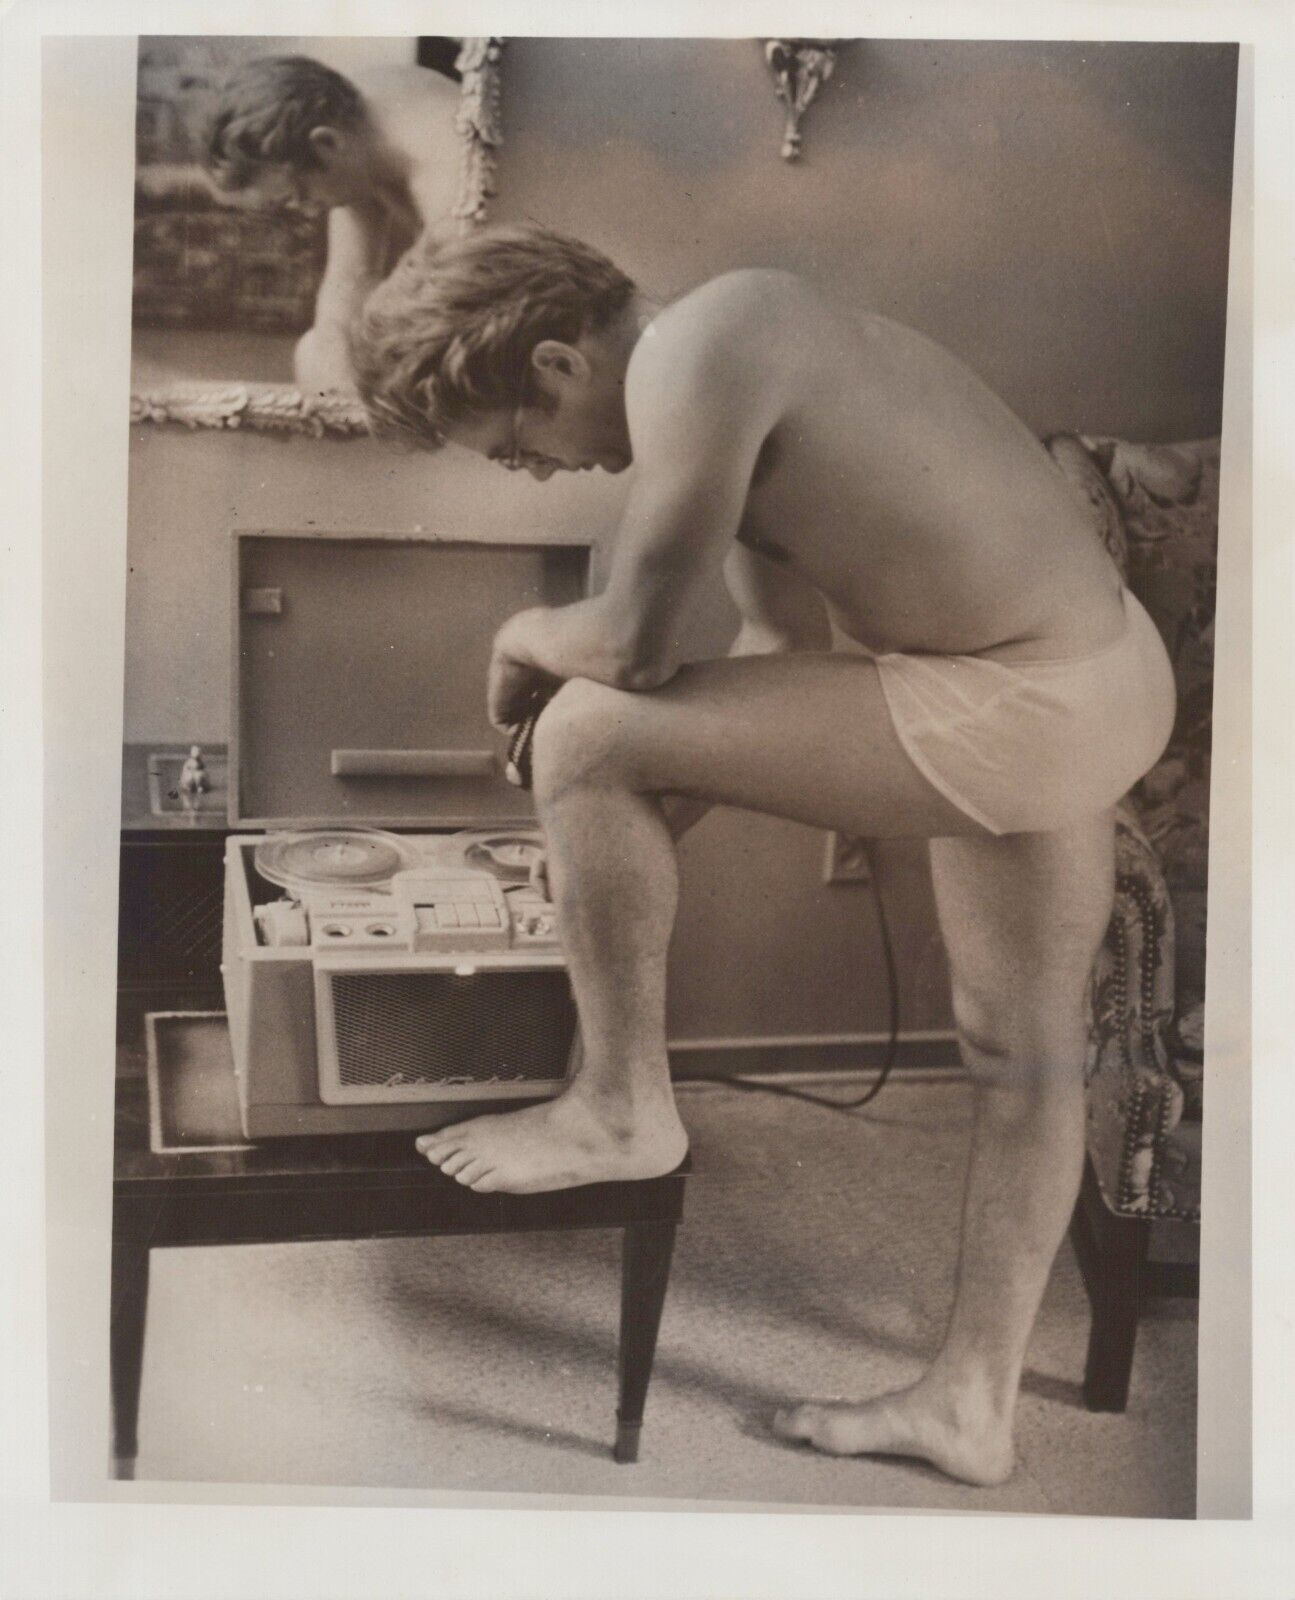 HOLLYWOOD LEGEND JAMES DEAN HANDSOME PORTRAIT 1950s ORIG VINTAGE Photo C38